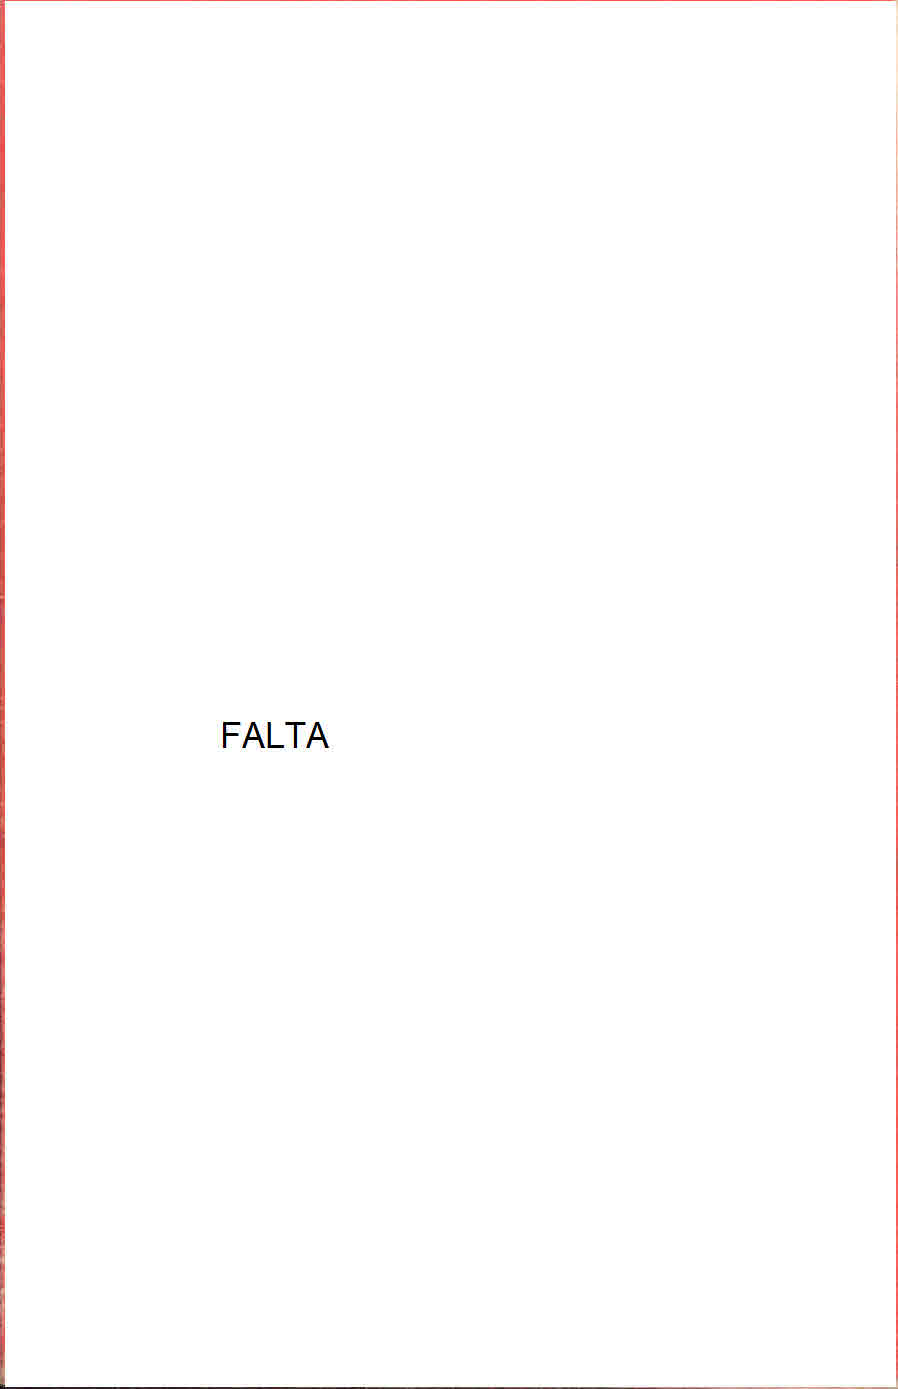 Copy of FALTA